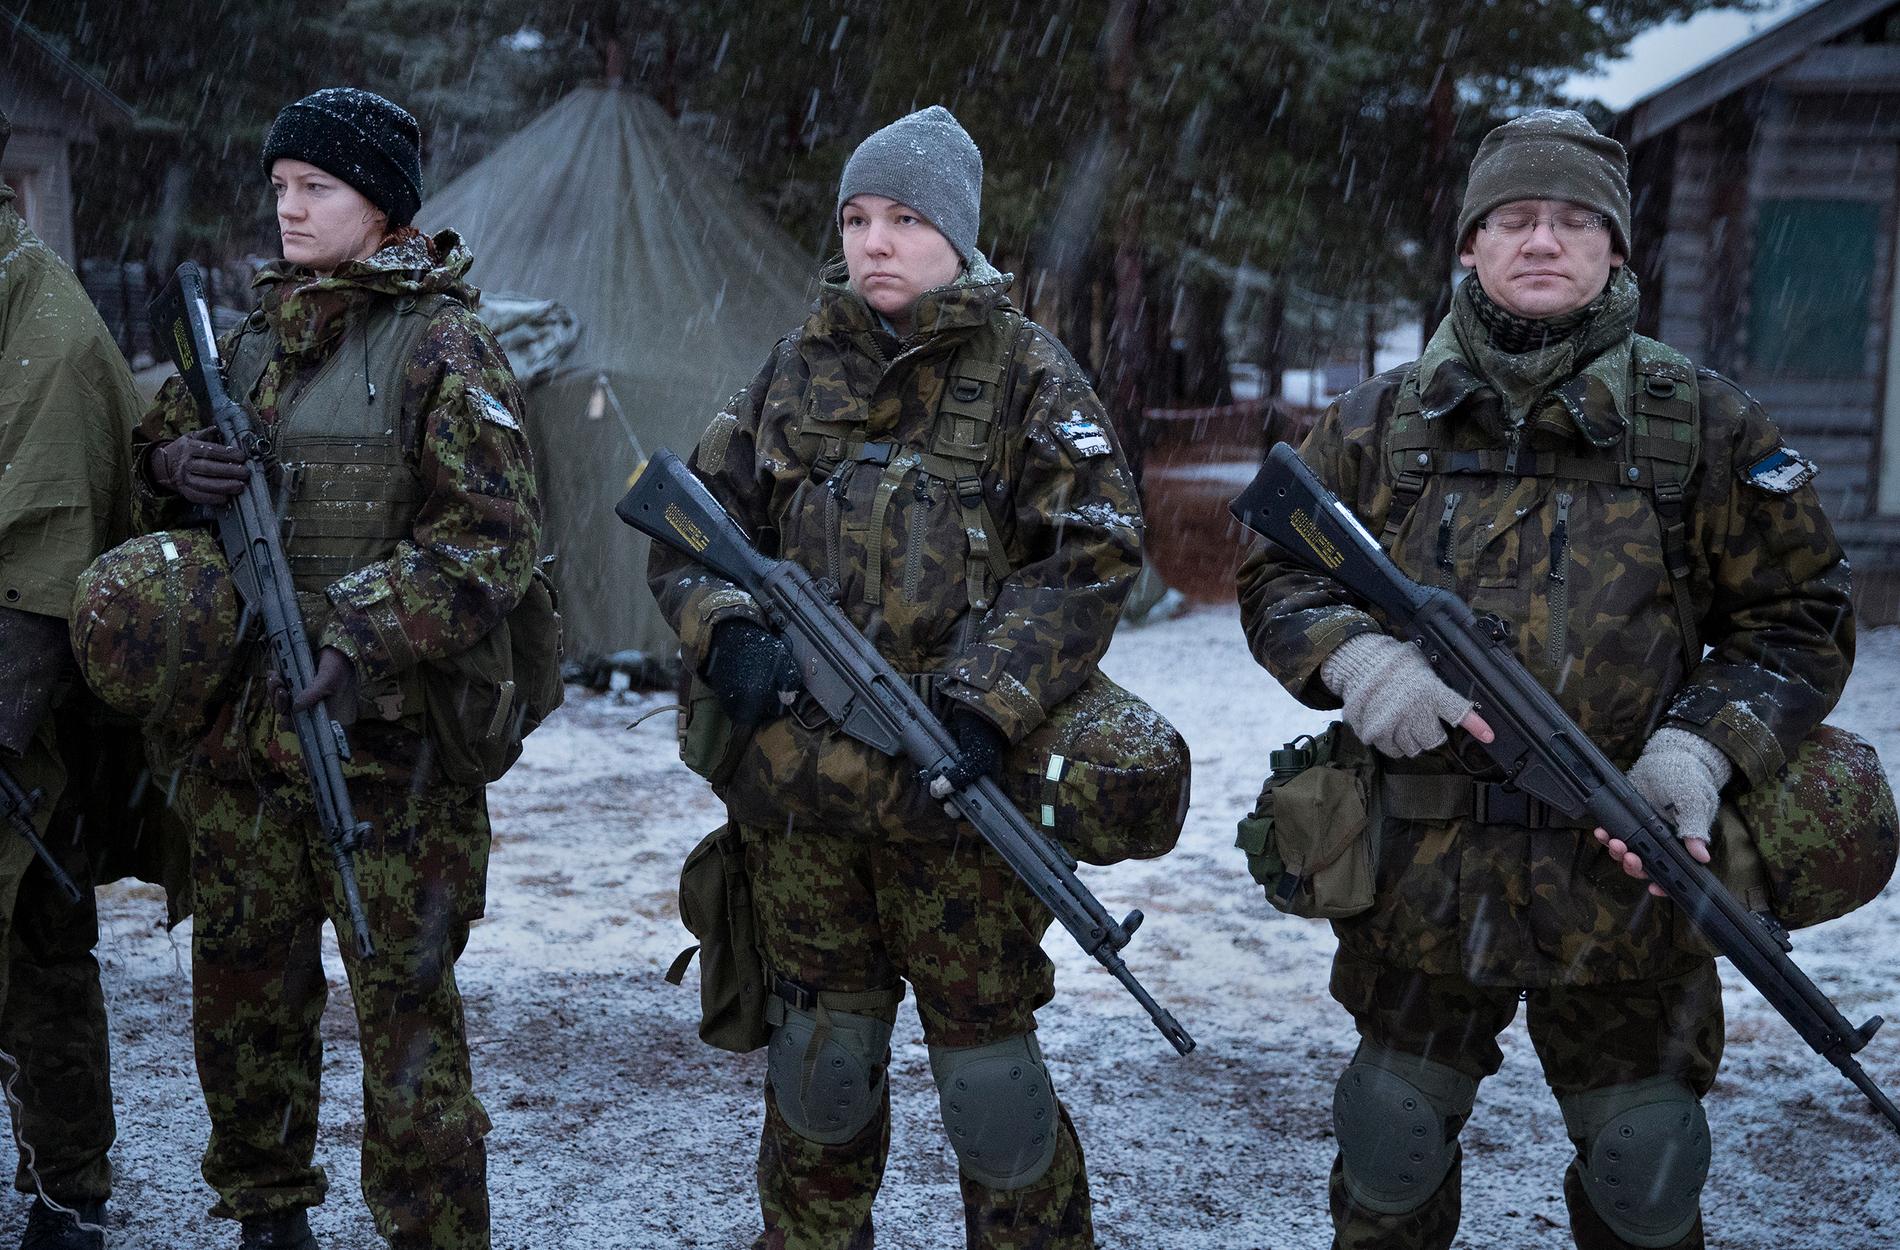 En tidigare outtalad känsla har växt sig starkare - att Estland måste vara berett att försvara sig självt.